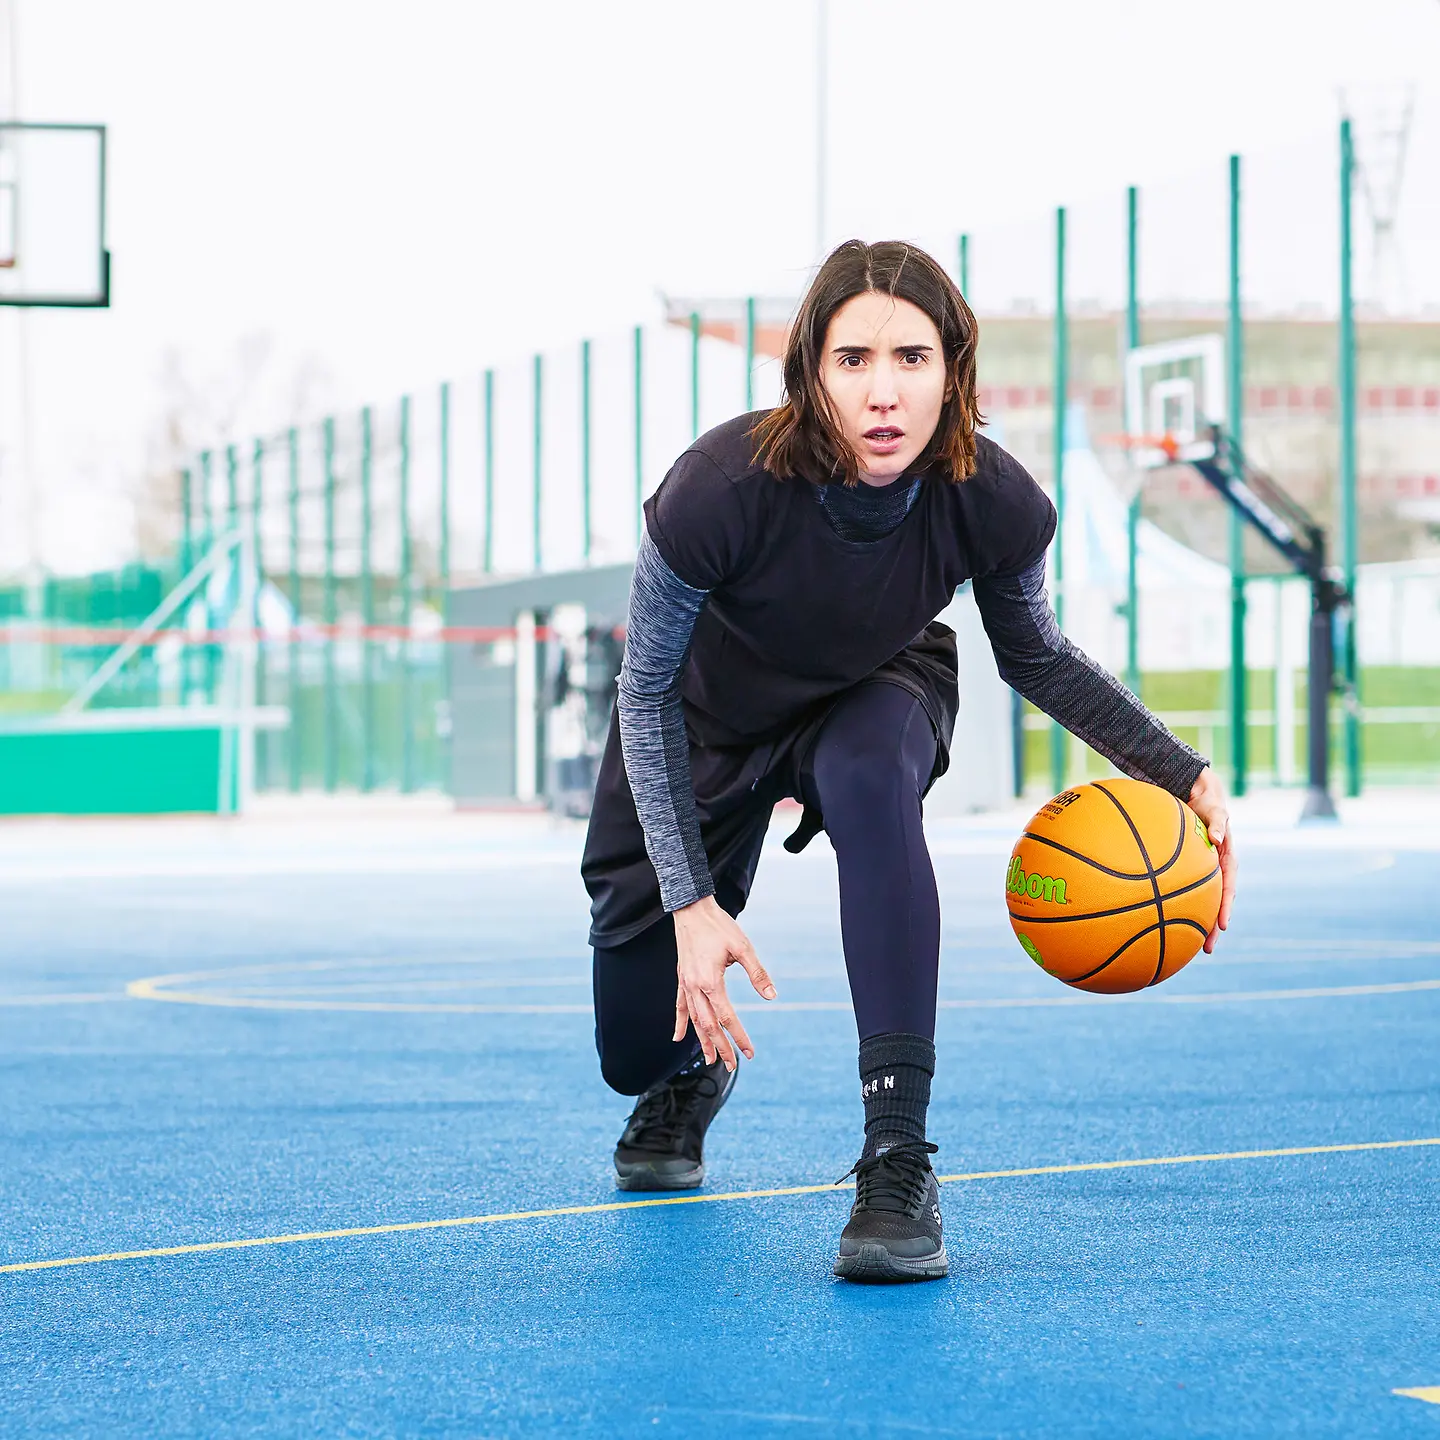 Carolina bewegt sich dribbelt mit einem Basketball in der Hand über den Basketballplatz.